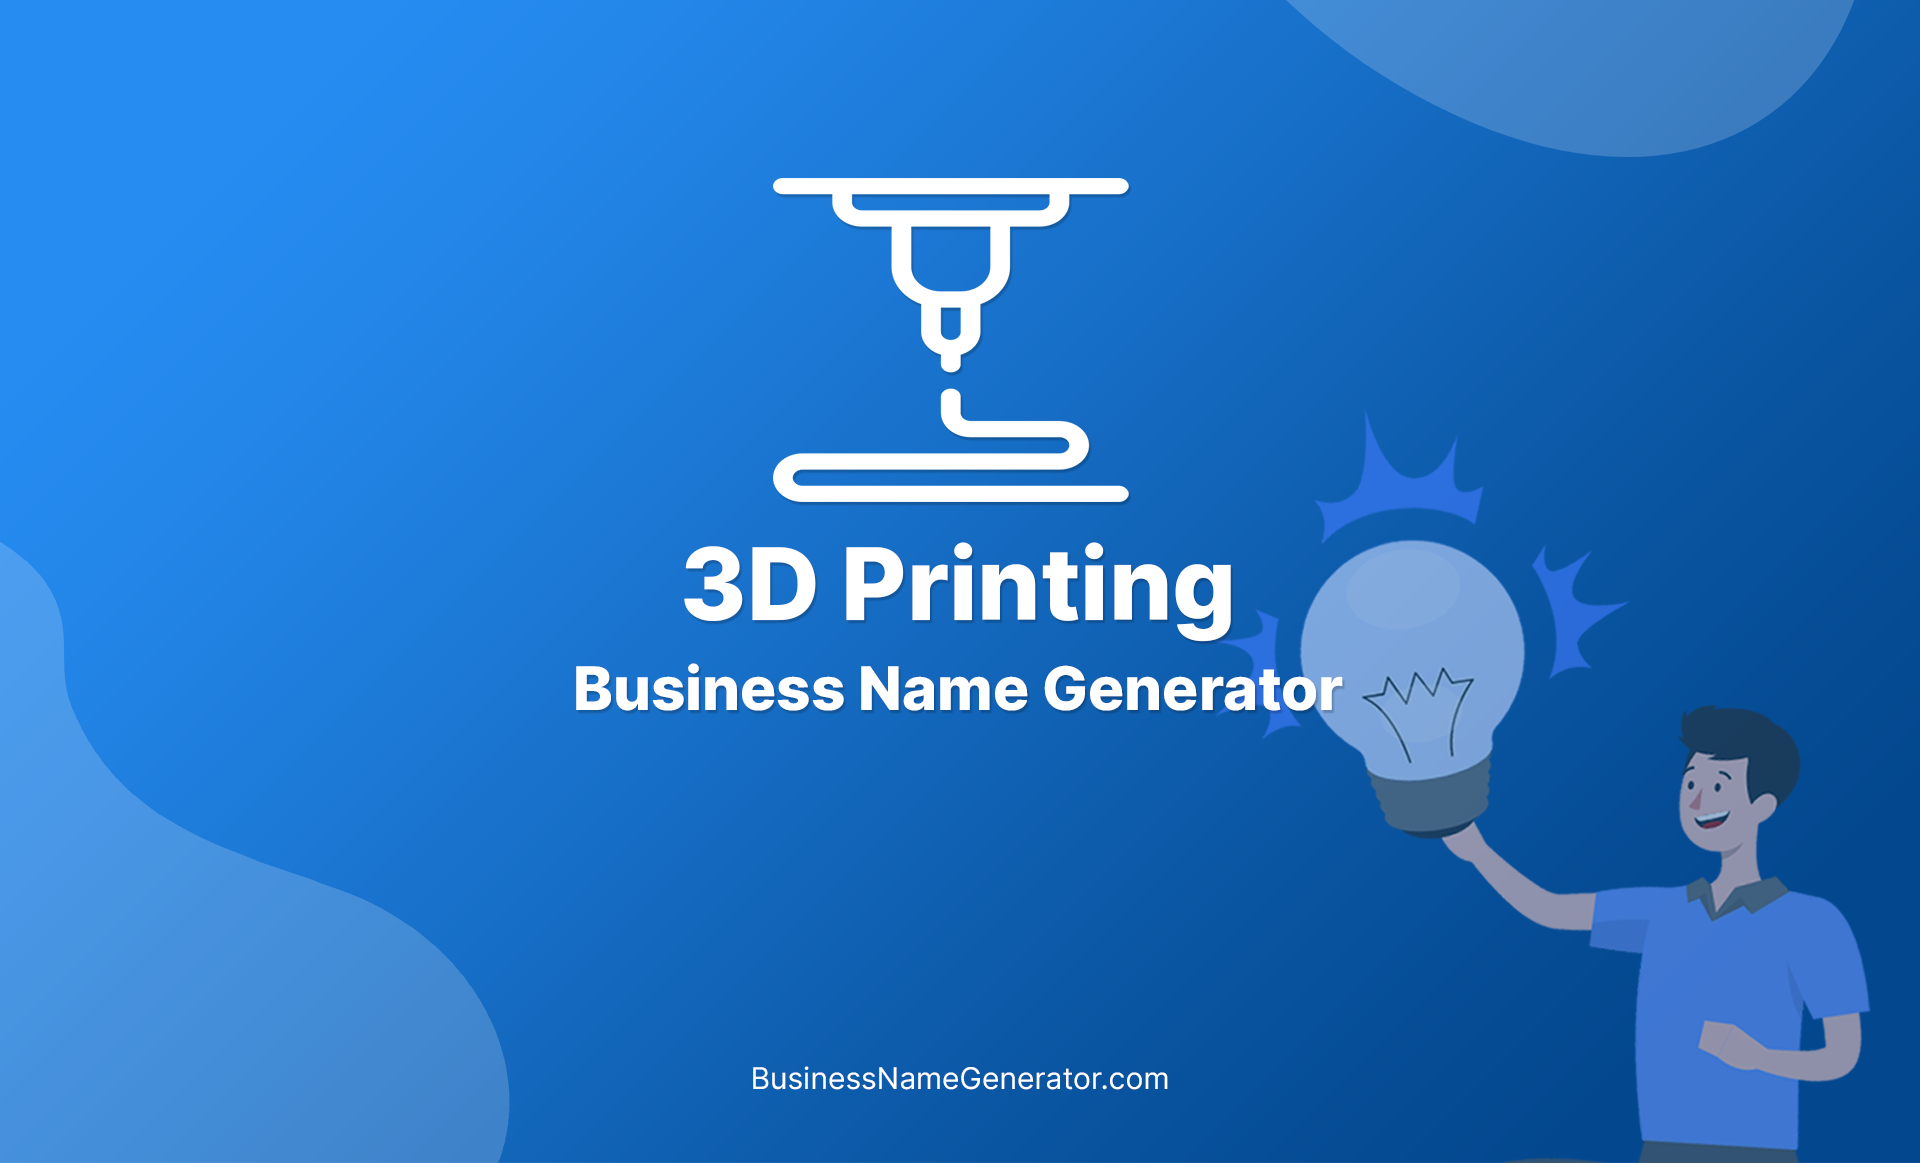 3D Printing Business Name Generator